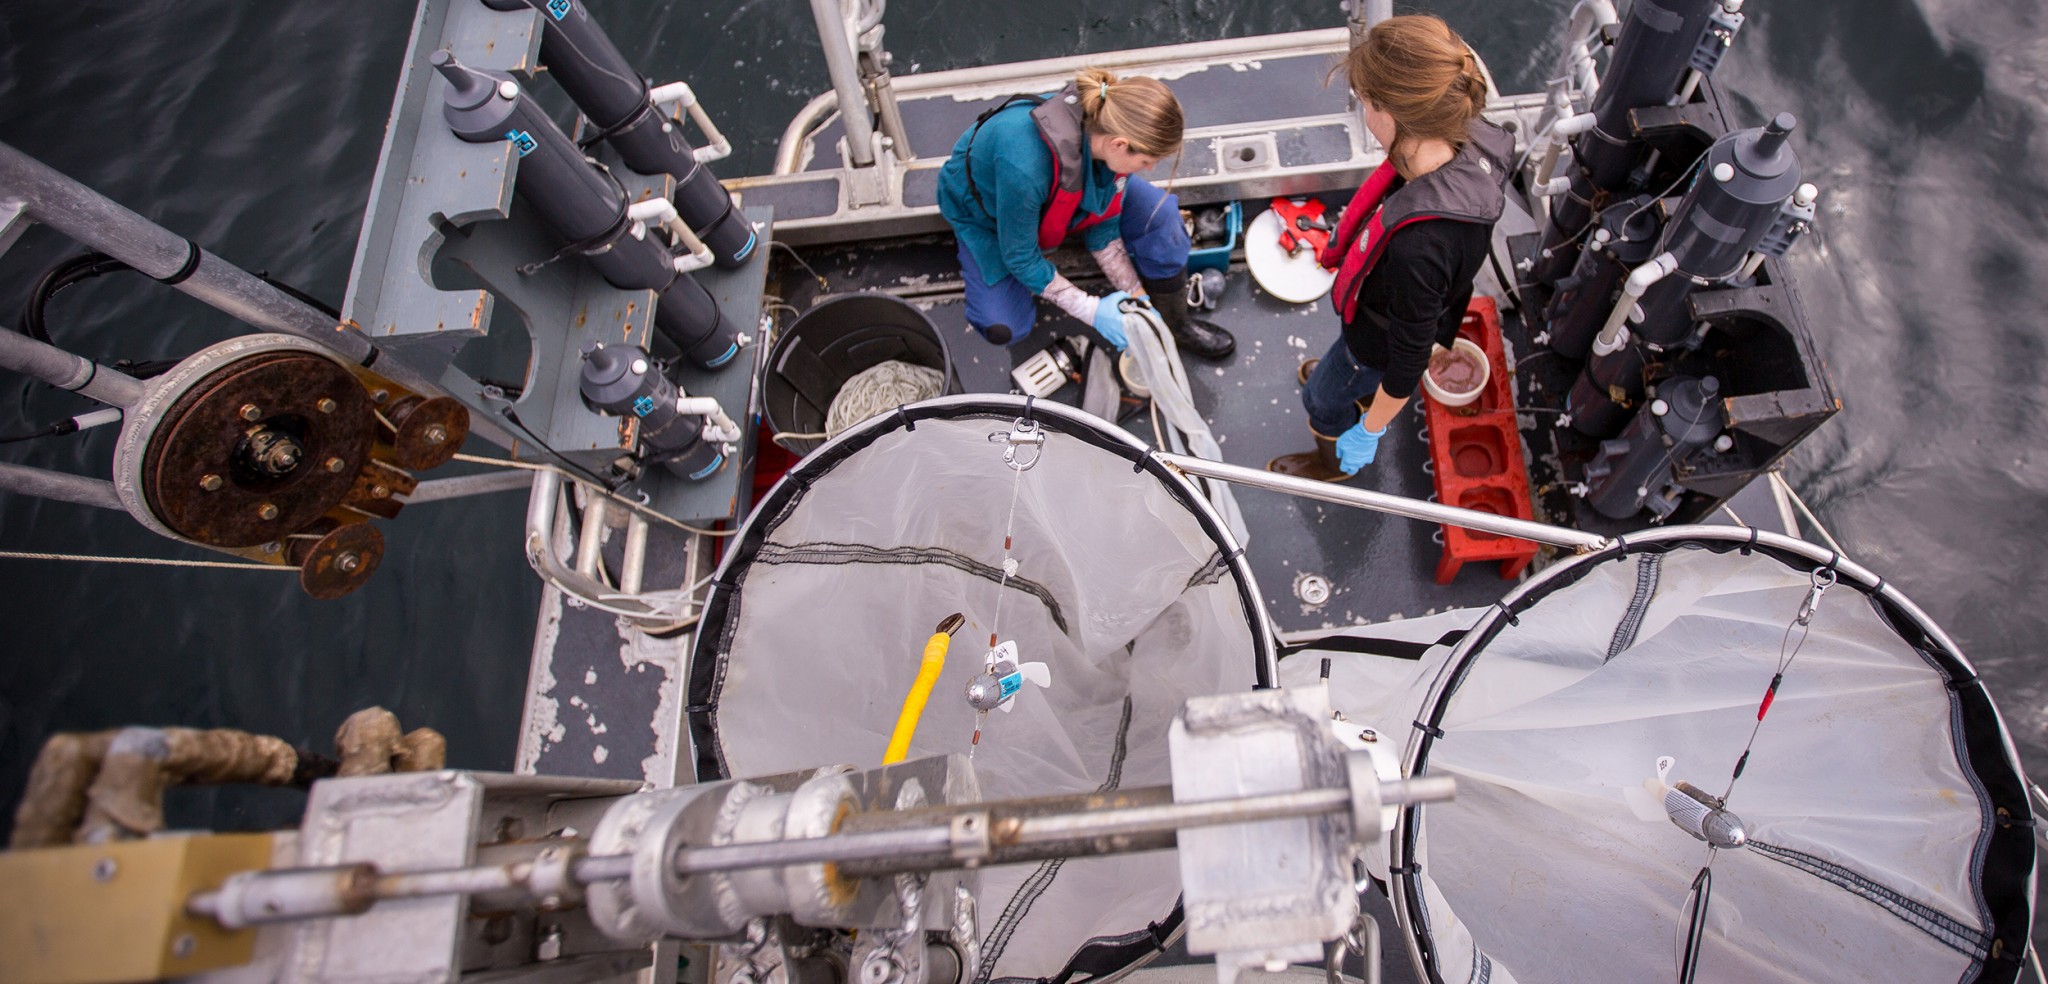 Hakai Institute researchers prepare nets for a plankton tow. Photo by Grant Callegari